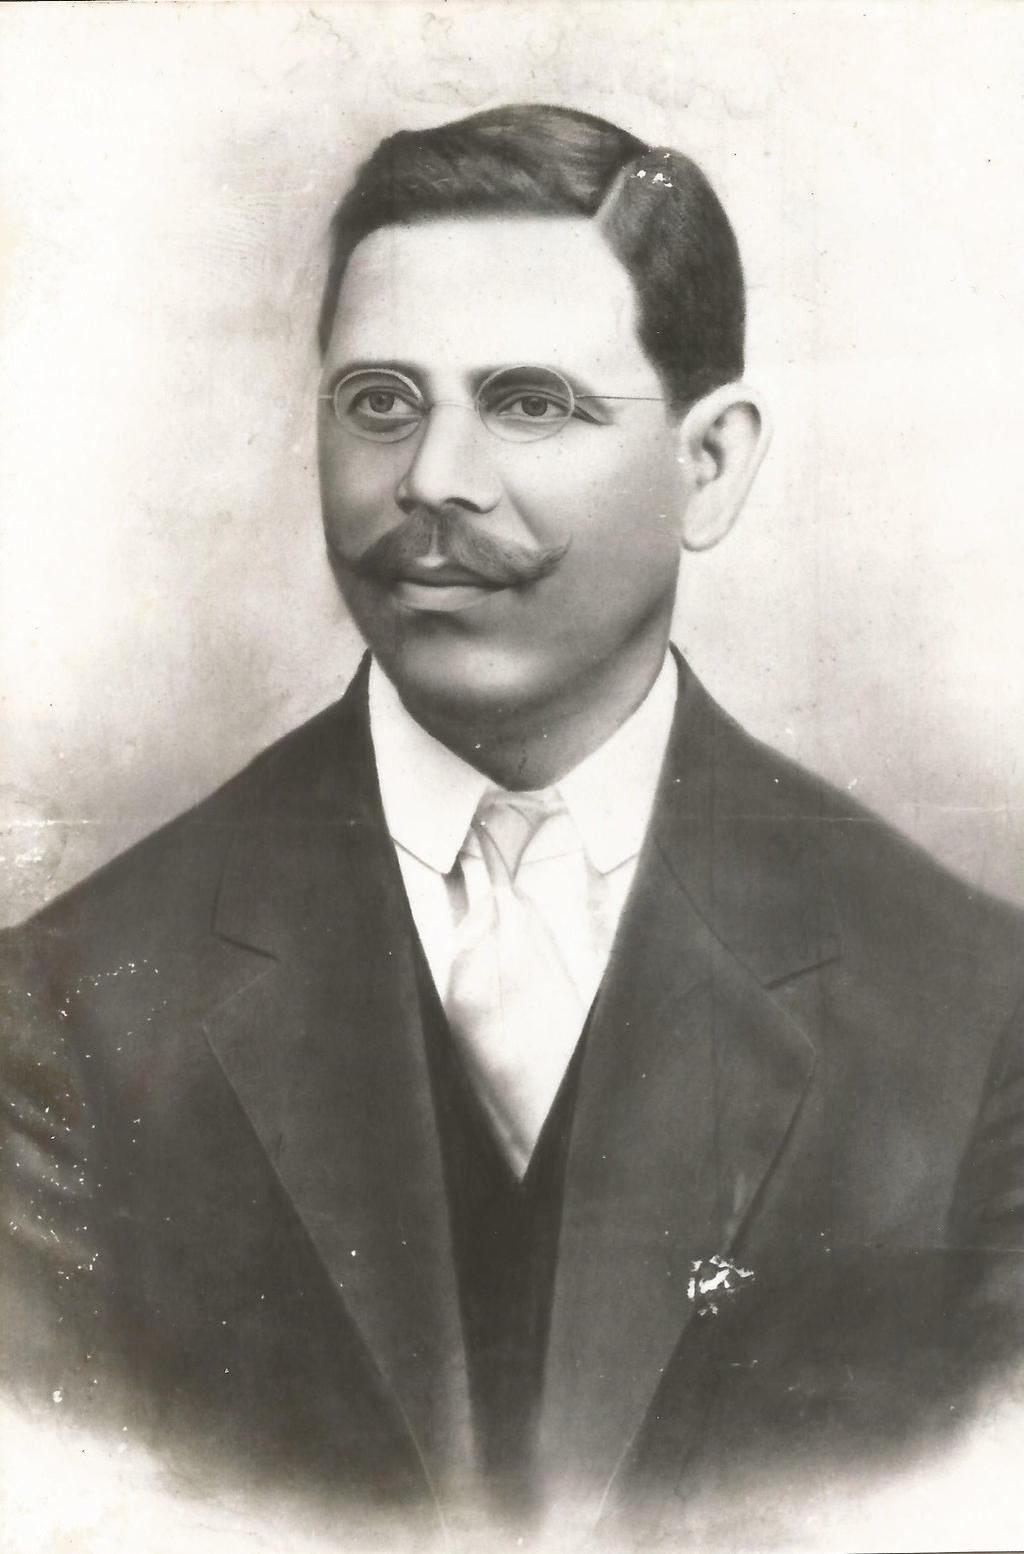 O estabelecimento de panificação foi fundado em 1930 por Luís Francisco Xavier. Filho de José Francisco Xavier e Francisca de Jesus, Luís nasceu no sítio do Lombo Segundo em 3 de Agosto de 1874.